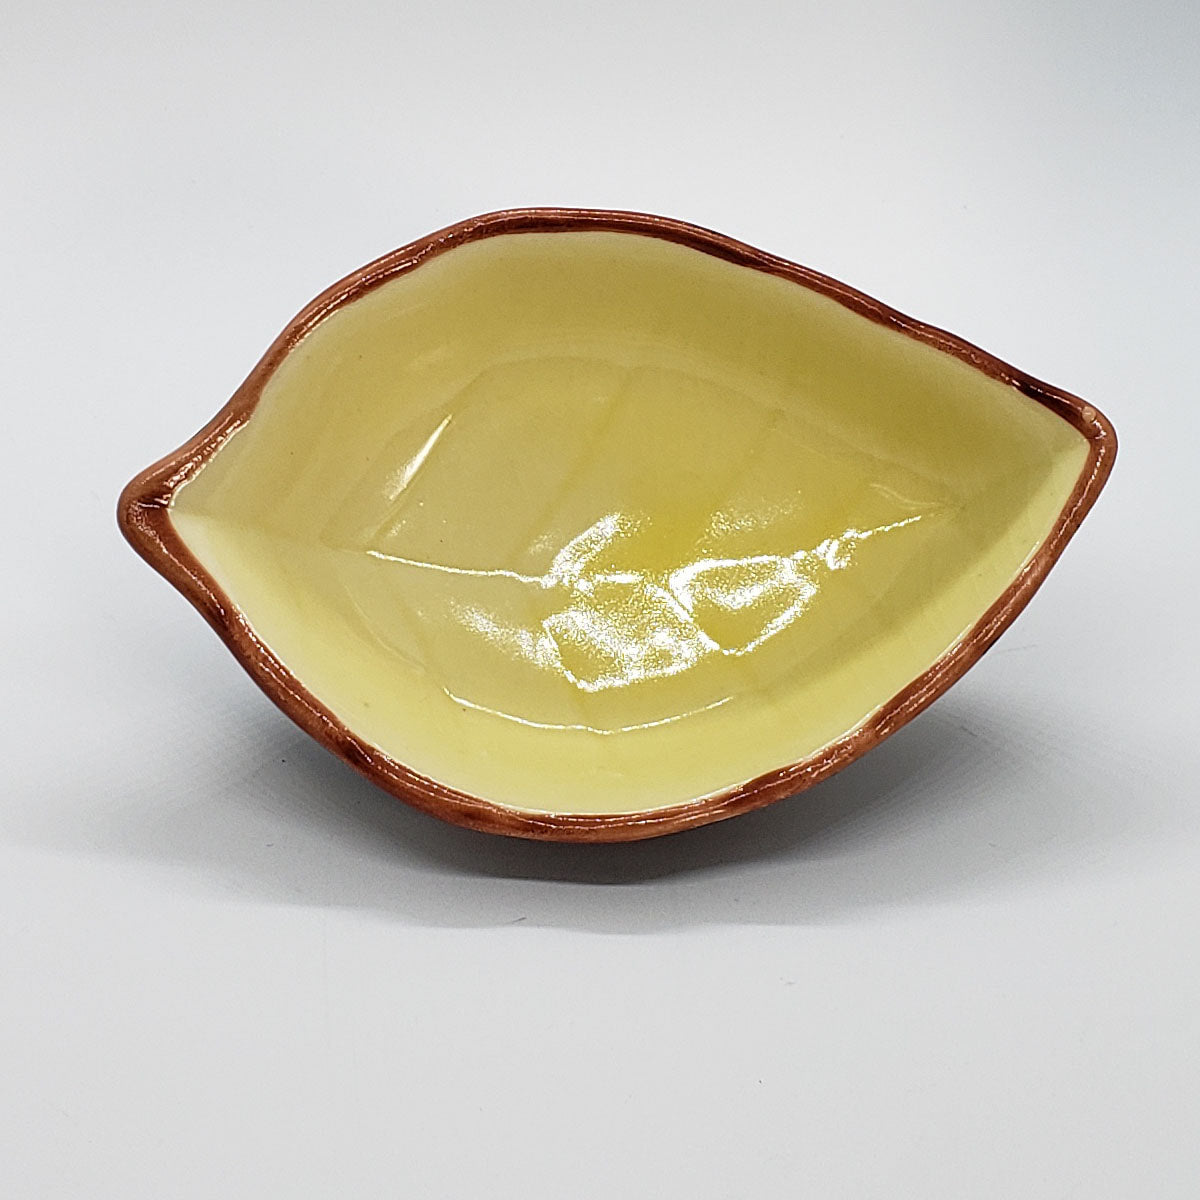 Leaf Ceramic Dish